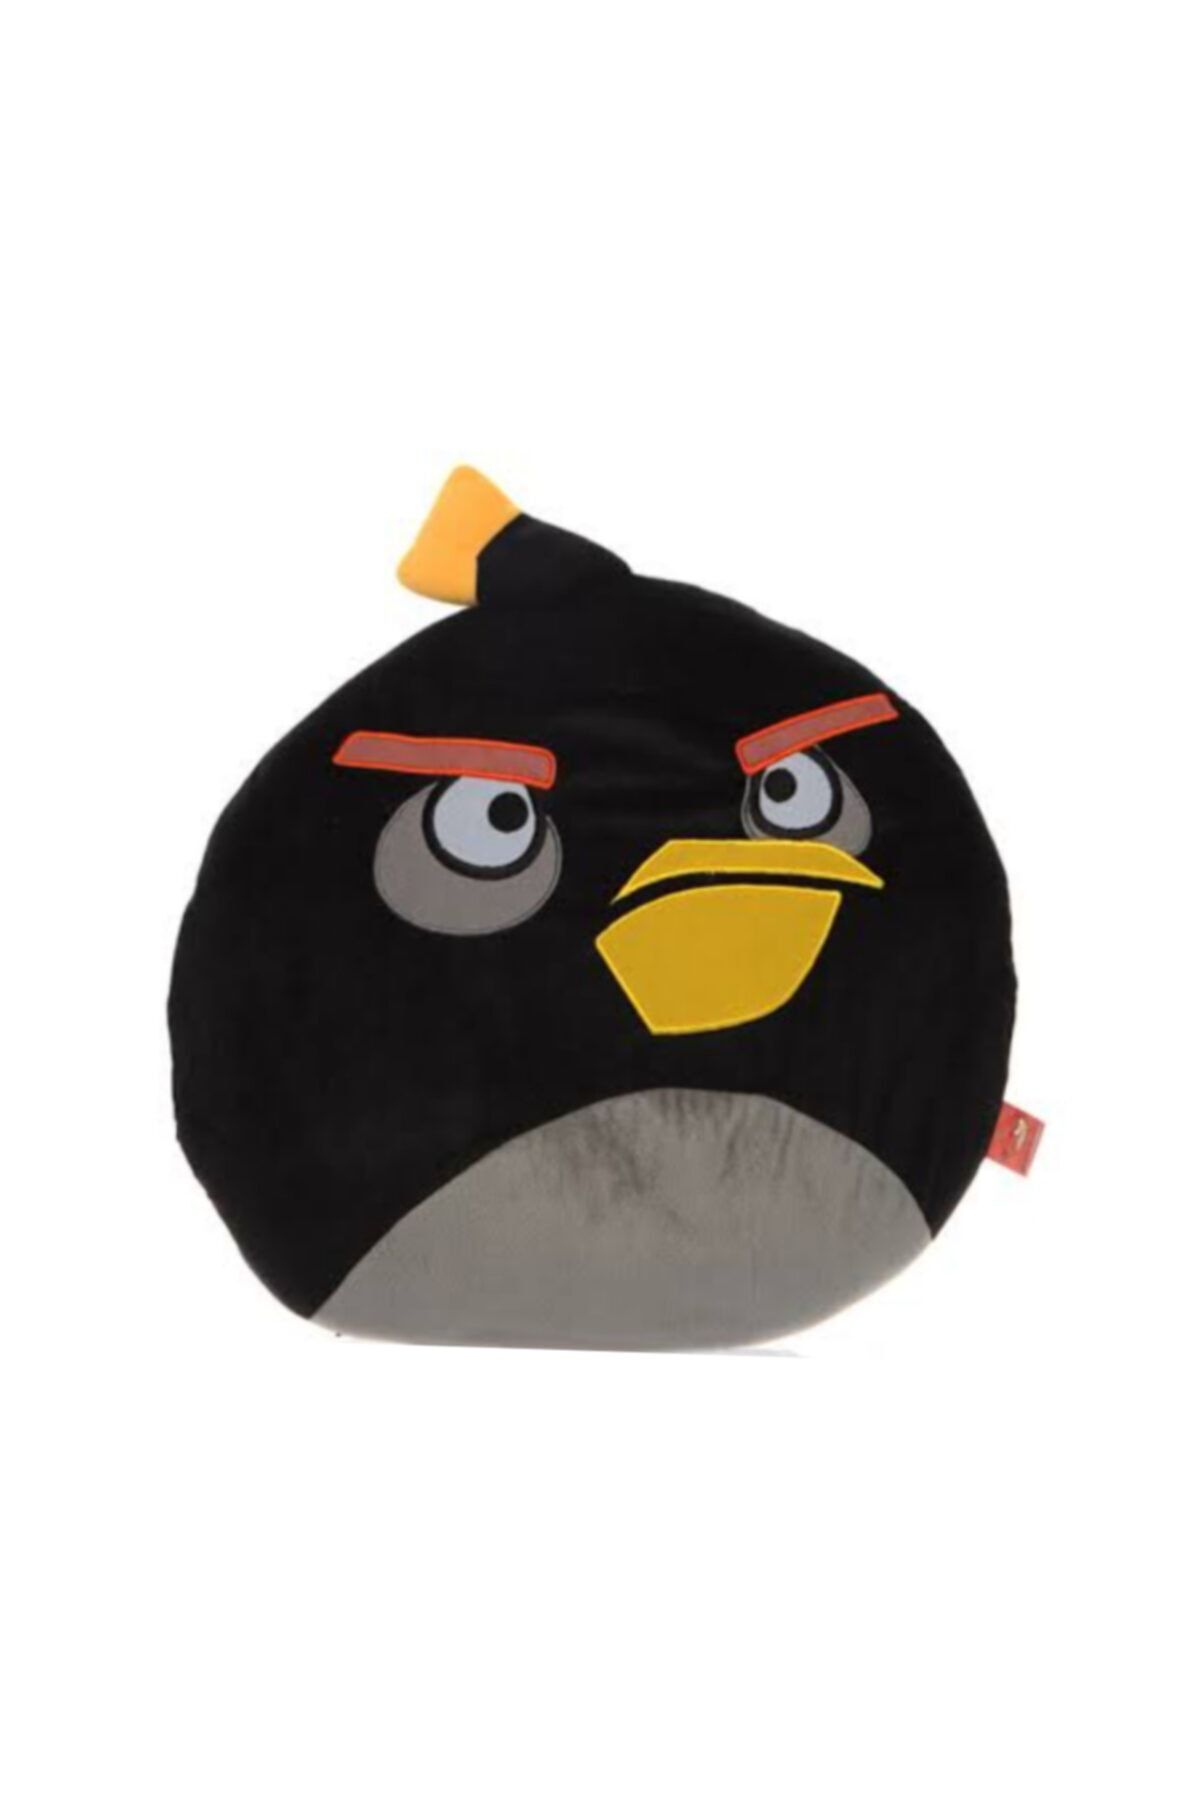 Angry Birds Peluş Yastık Büyük Boy 42cm. Lisanslı Peluş